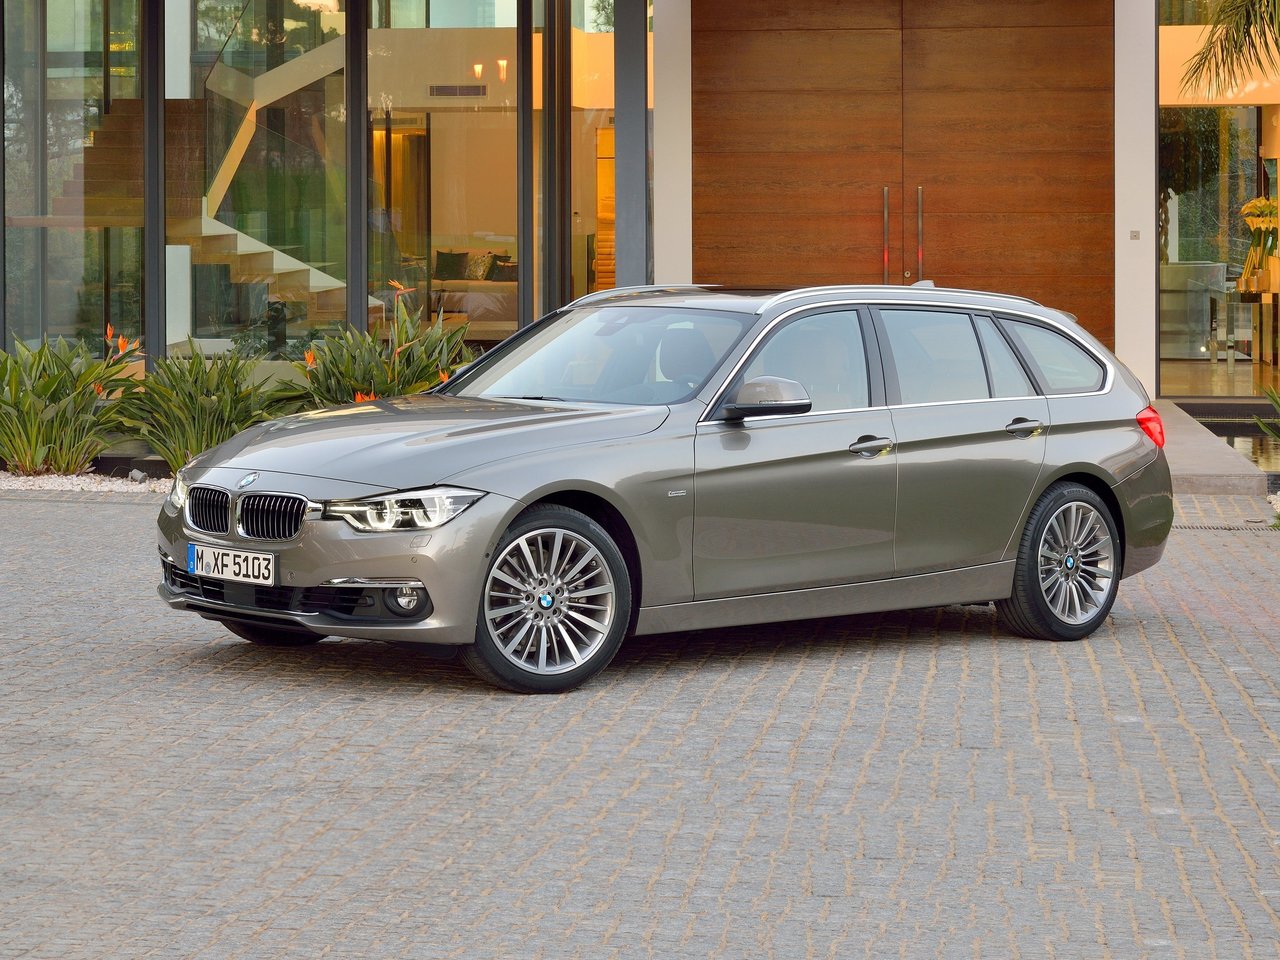 Расход газа пяти комплектаций универсала пять дверей BMW 3 серия. Разница стоимости заправки газом и бензином. Автономный пробег до и после установки ГБО.